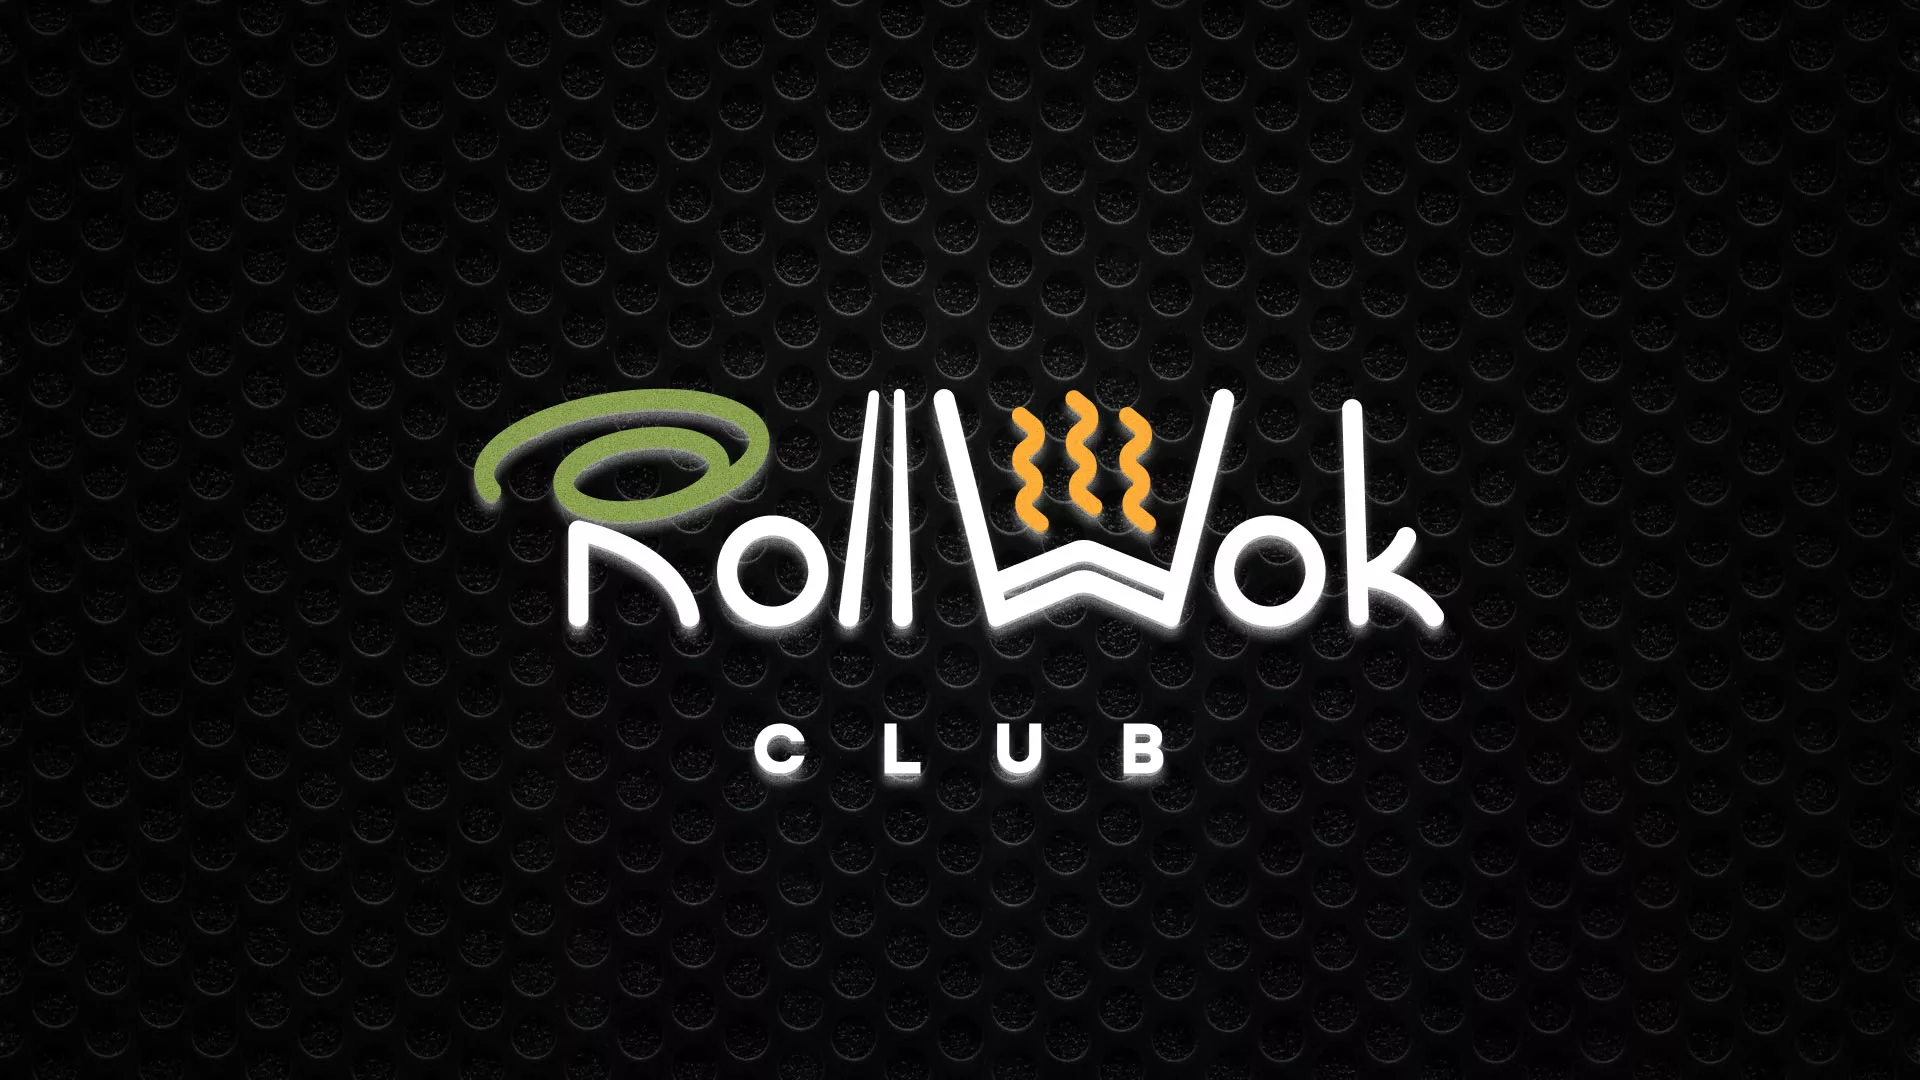 Брендирование торговых точек суши-бара «Roll Wok Club» в Щёкино